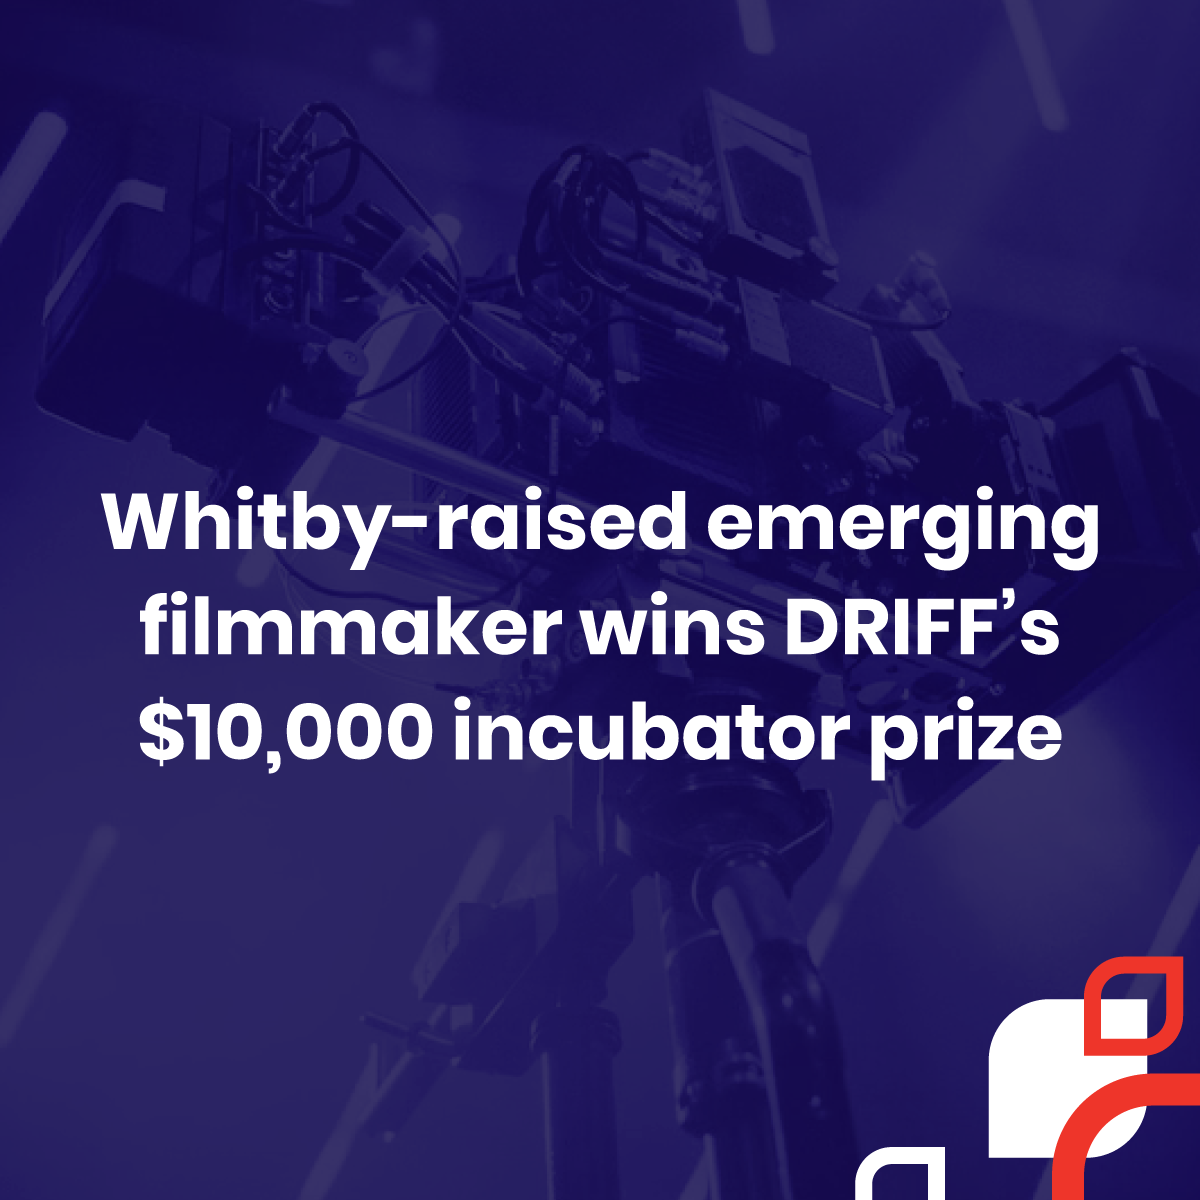 Whitby-raised emerging filmmaker wins DRIFF’s $10,000 incubator prize.